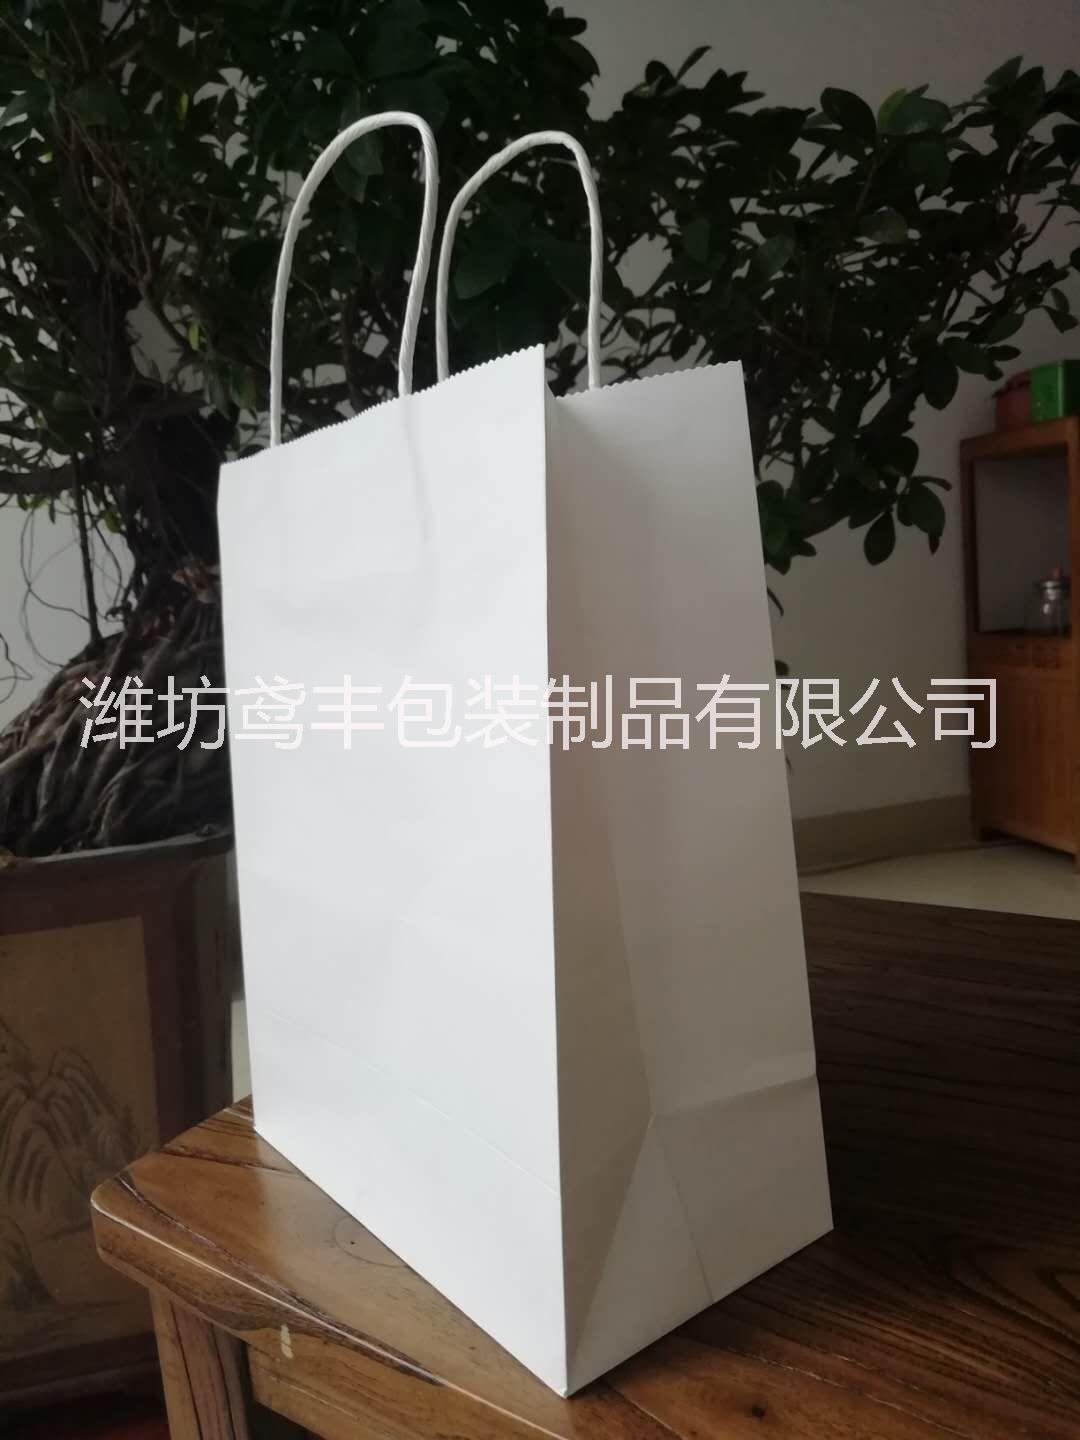 潍坊市手提袋厂家公司成立以来主打产品纸质手提袋